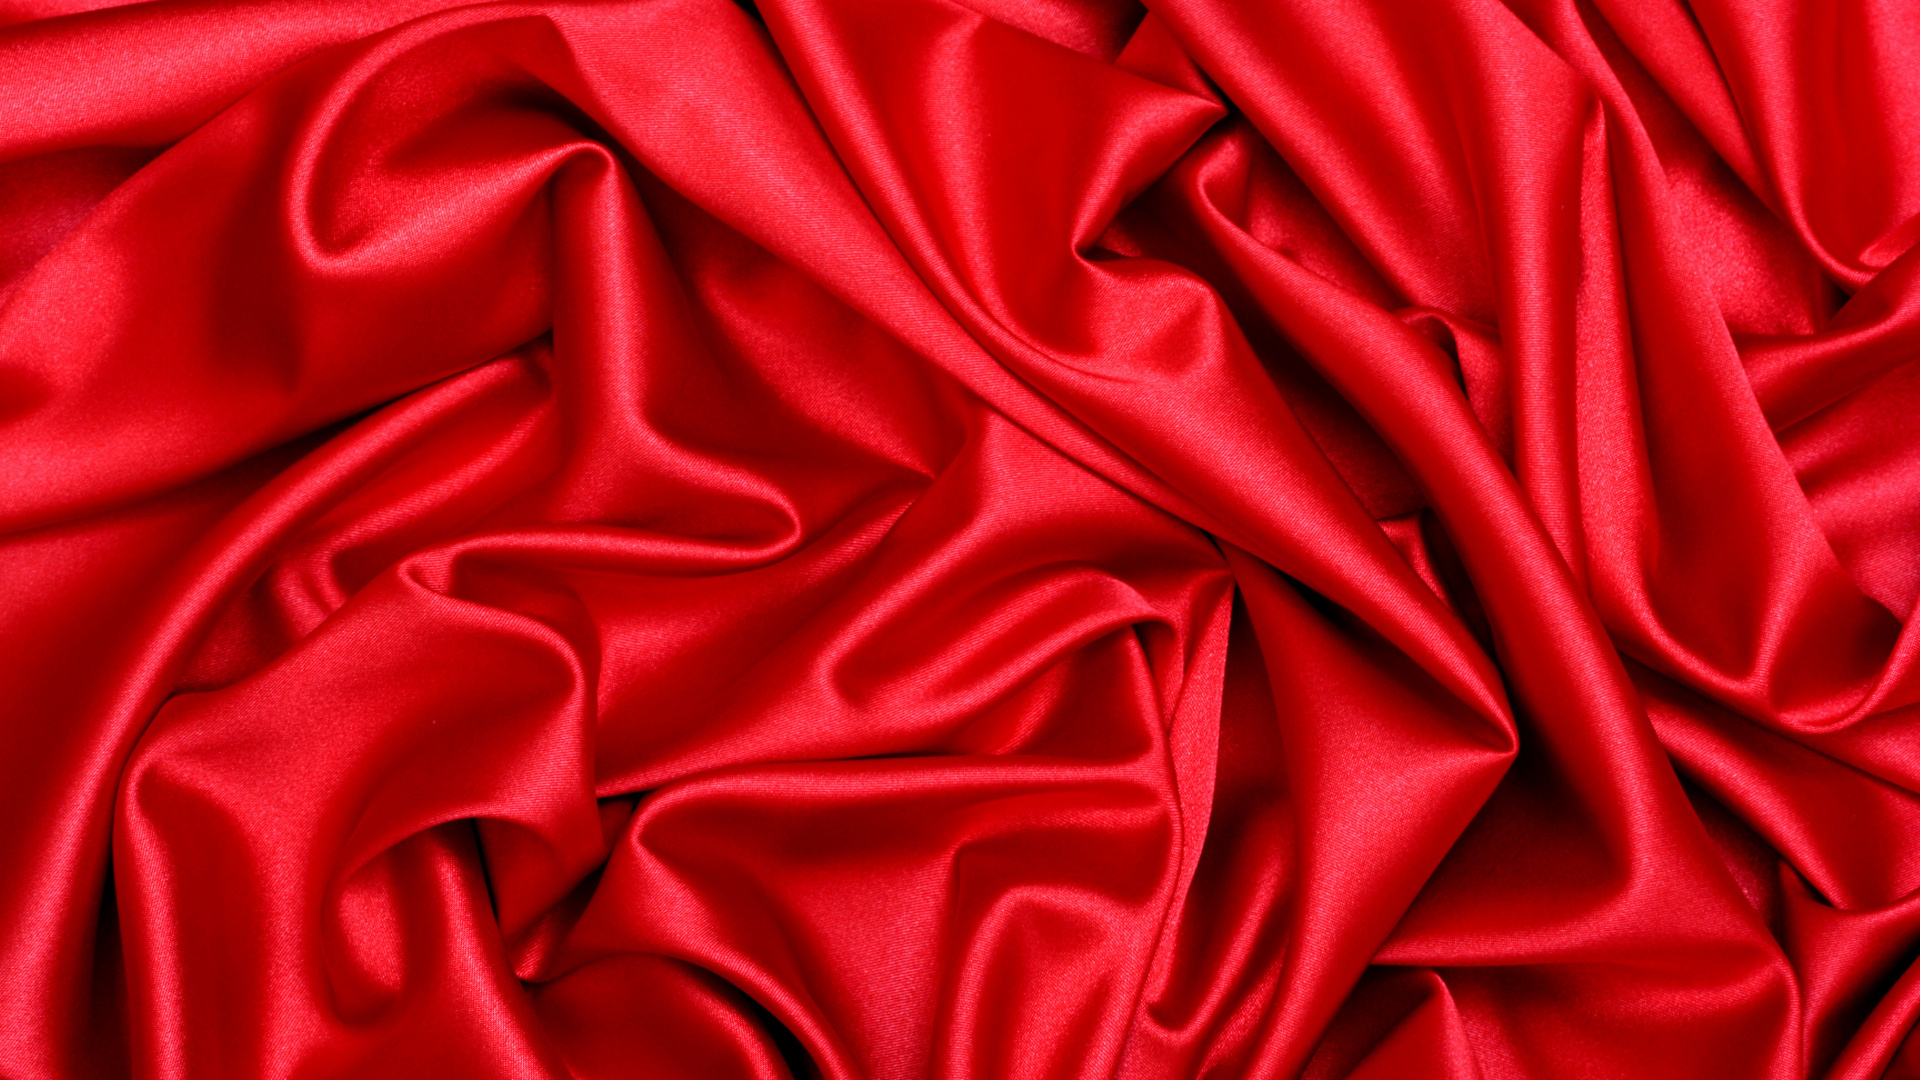 缎面, 丝绸, 红色的, 天鹅绒, 品红色 壁纸 1920x1080 允许